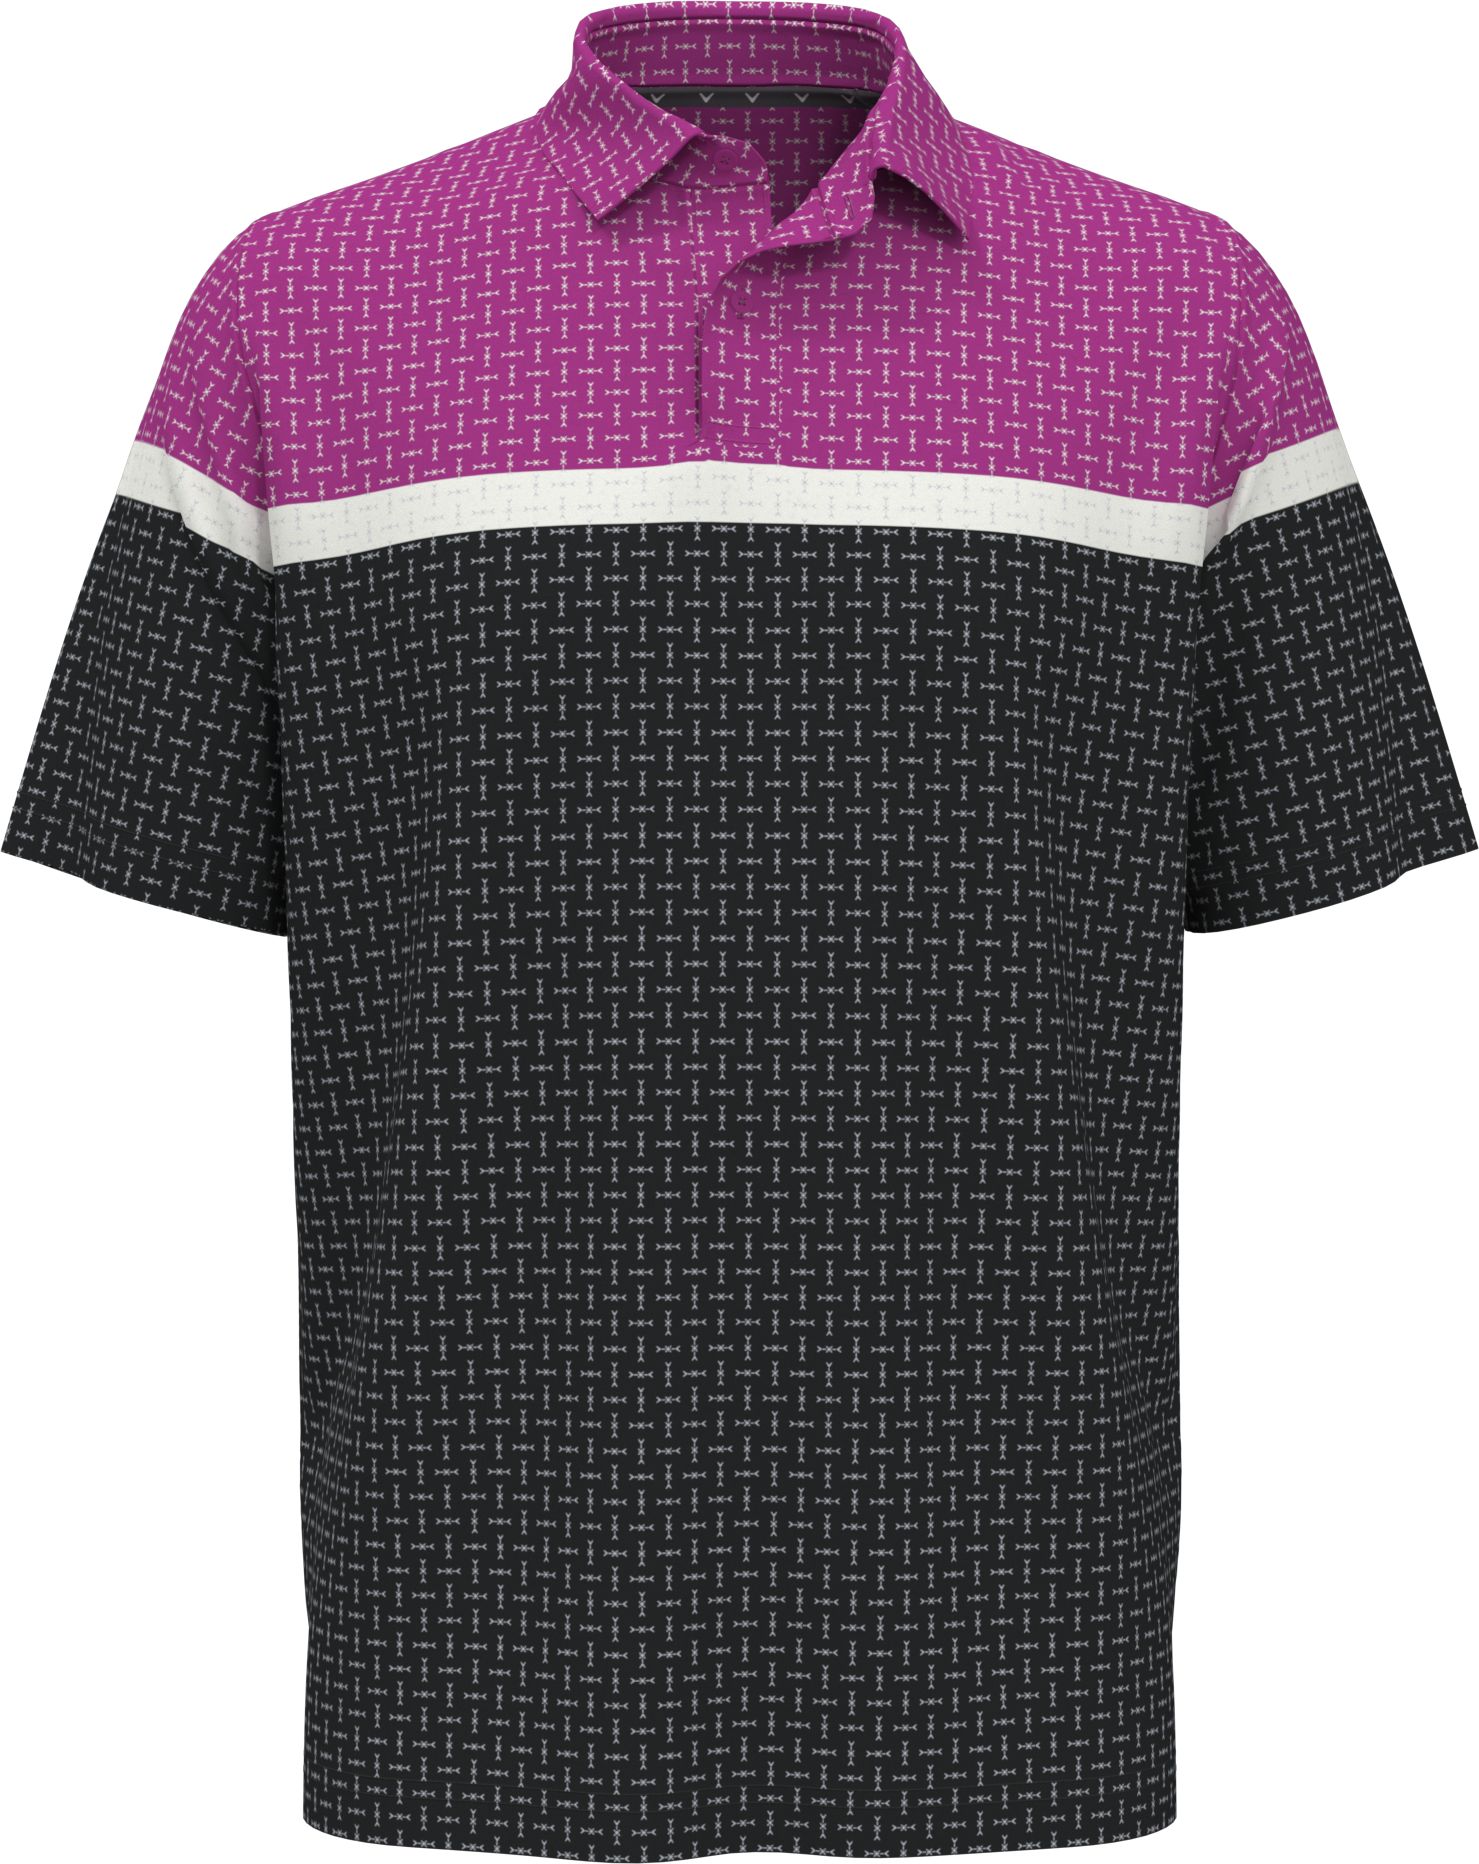 Callaway Classic Geo Print pánské golfové triko, fialové/tmavě šedé, vel. M